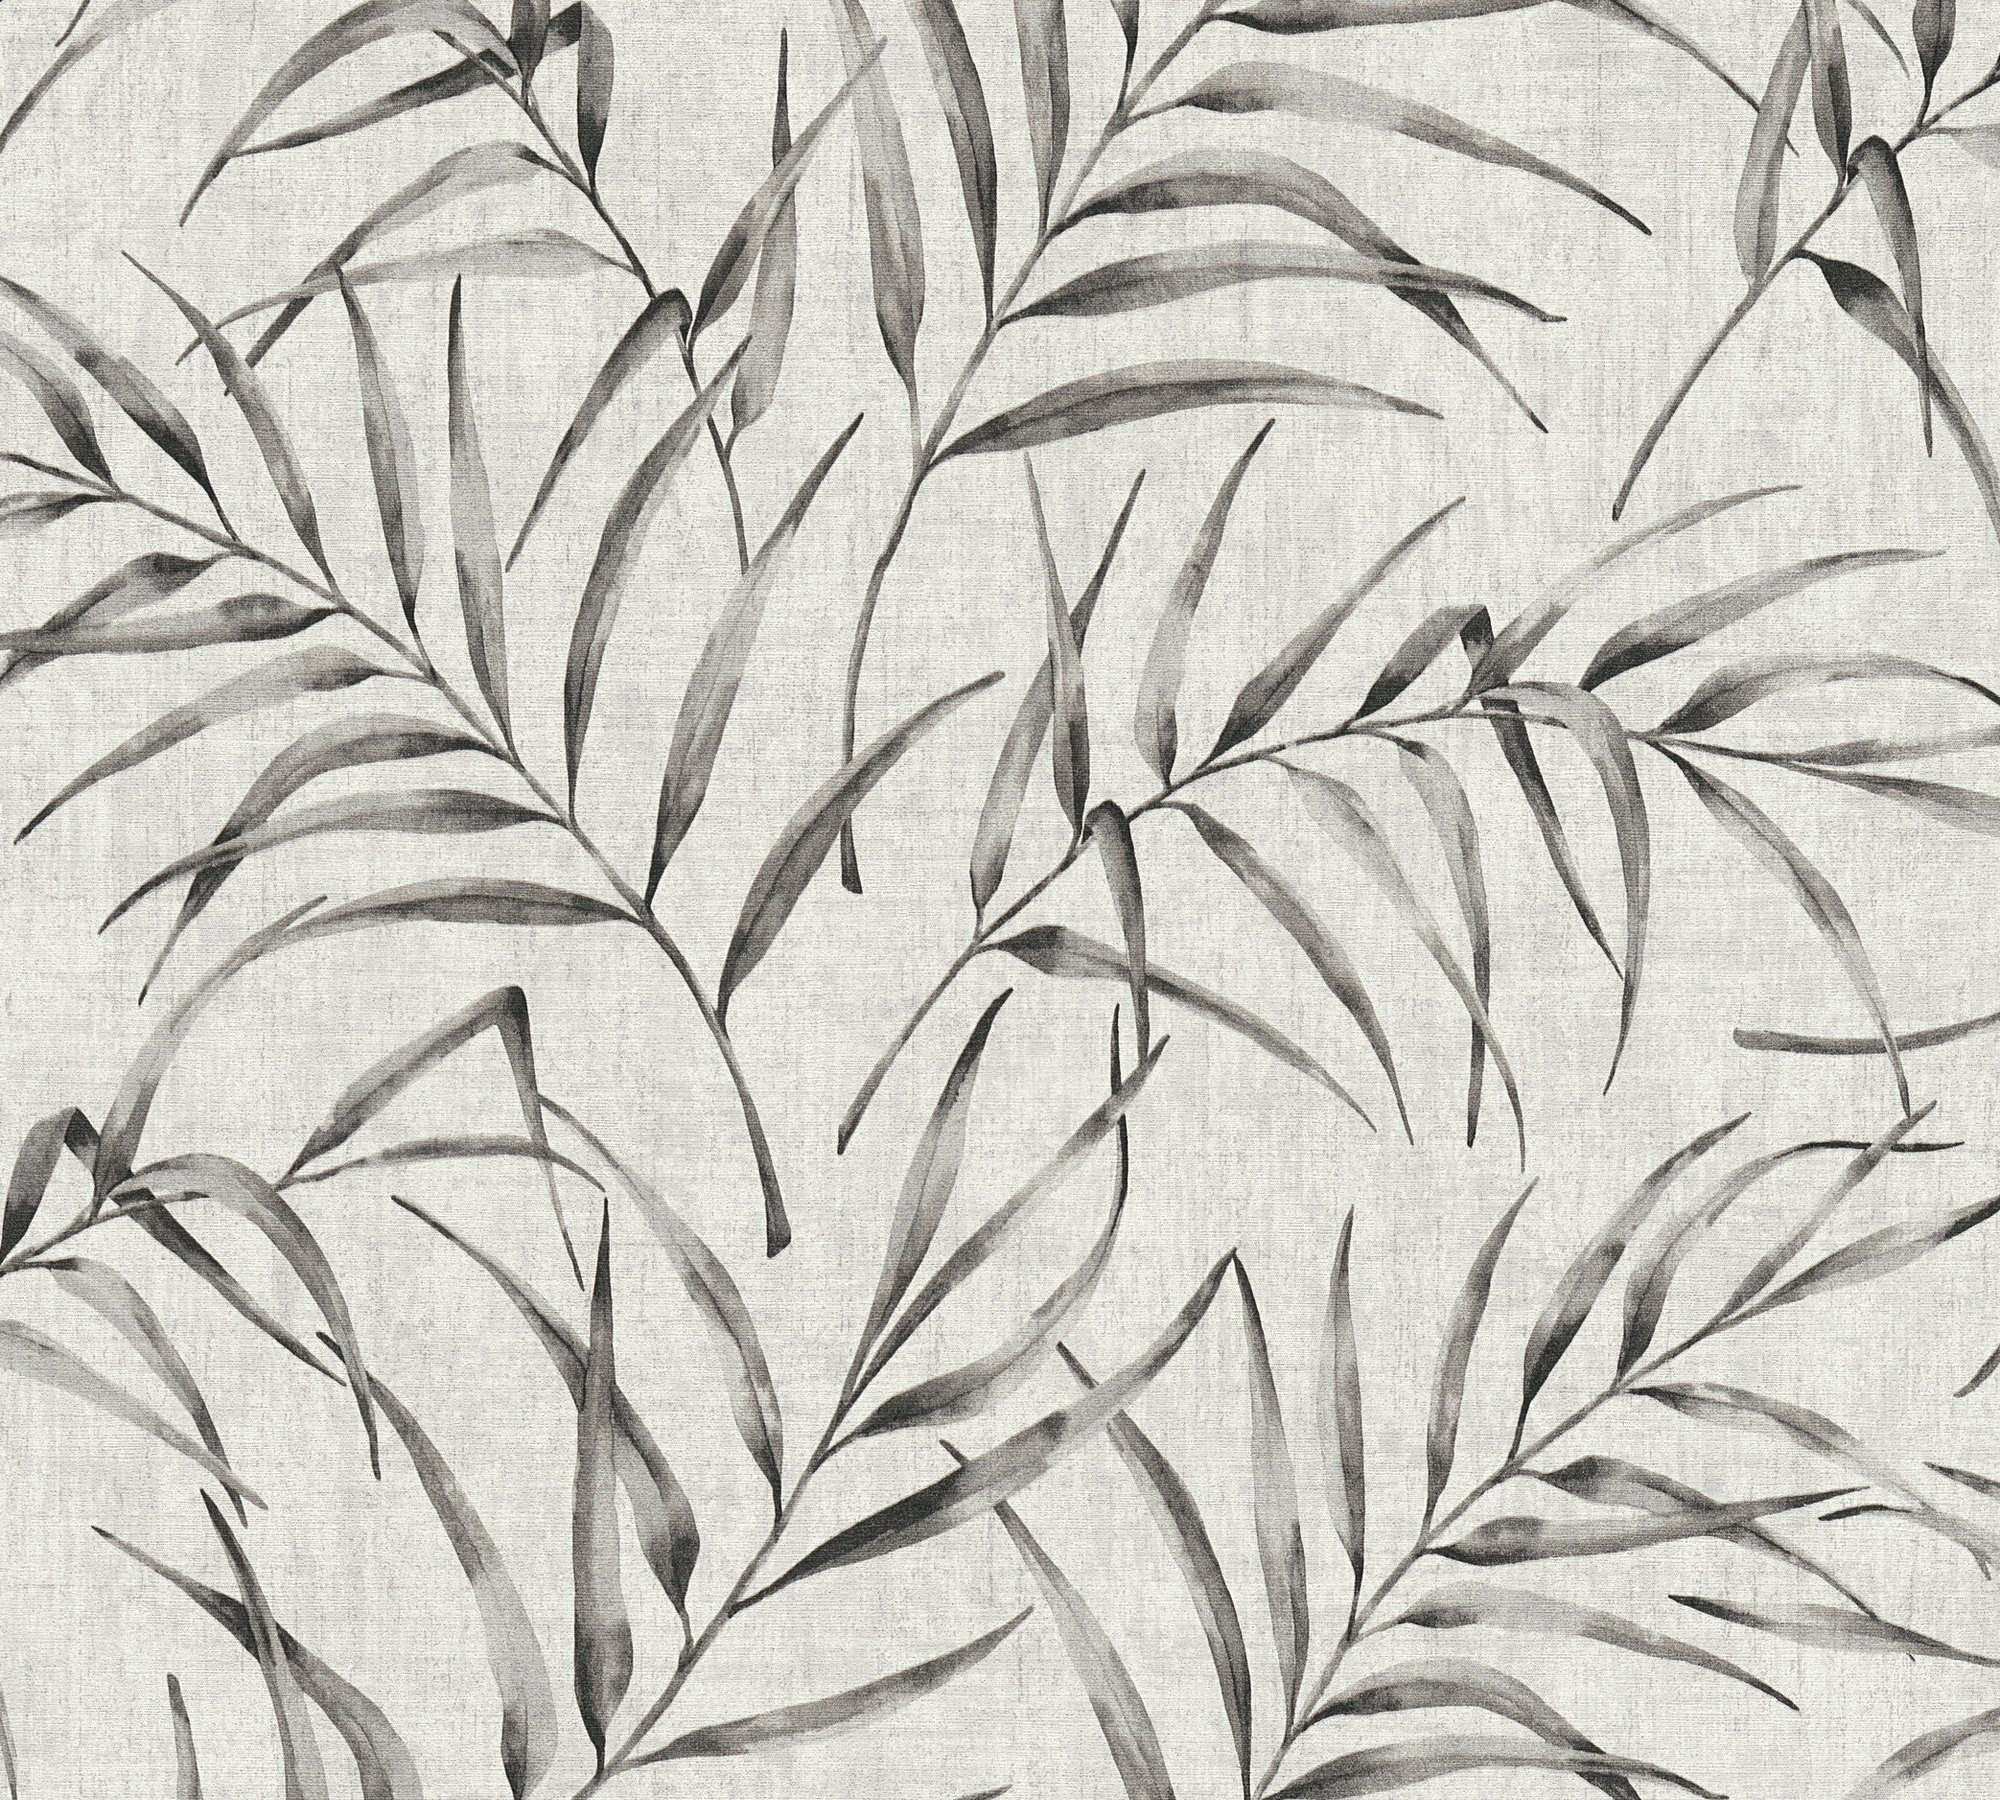 Dschungeltapete Création Vliestapete Palmen Tapete Dschungel A.S. Optik, in grau/beige mit Greenery floral, Palmenprint